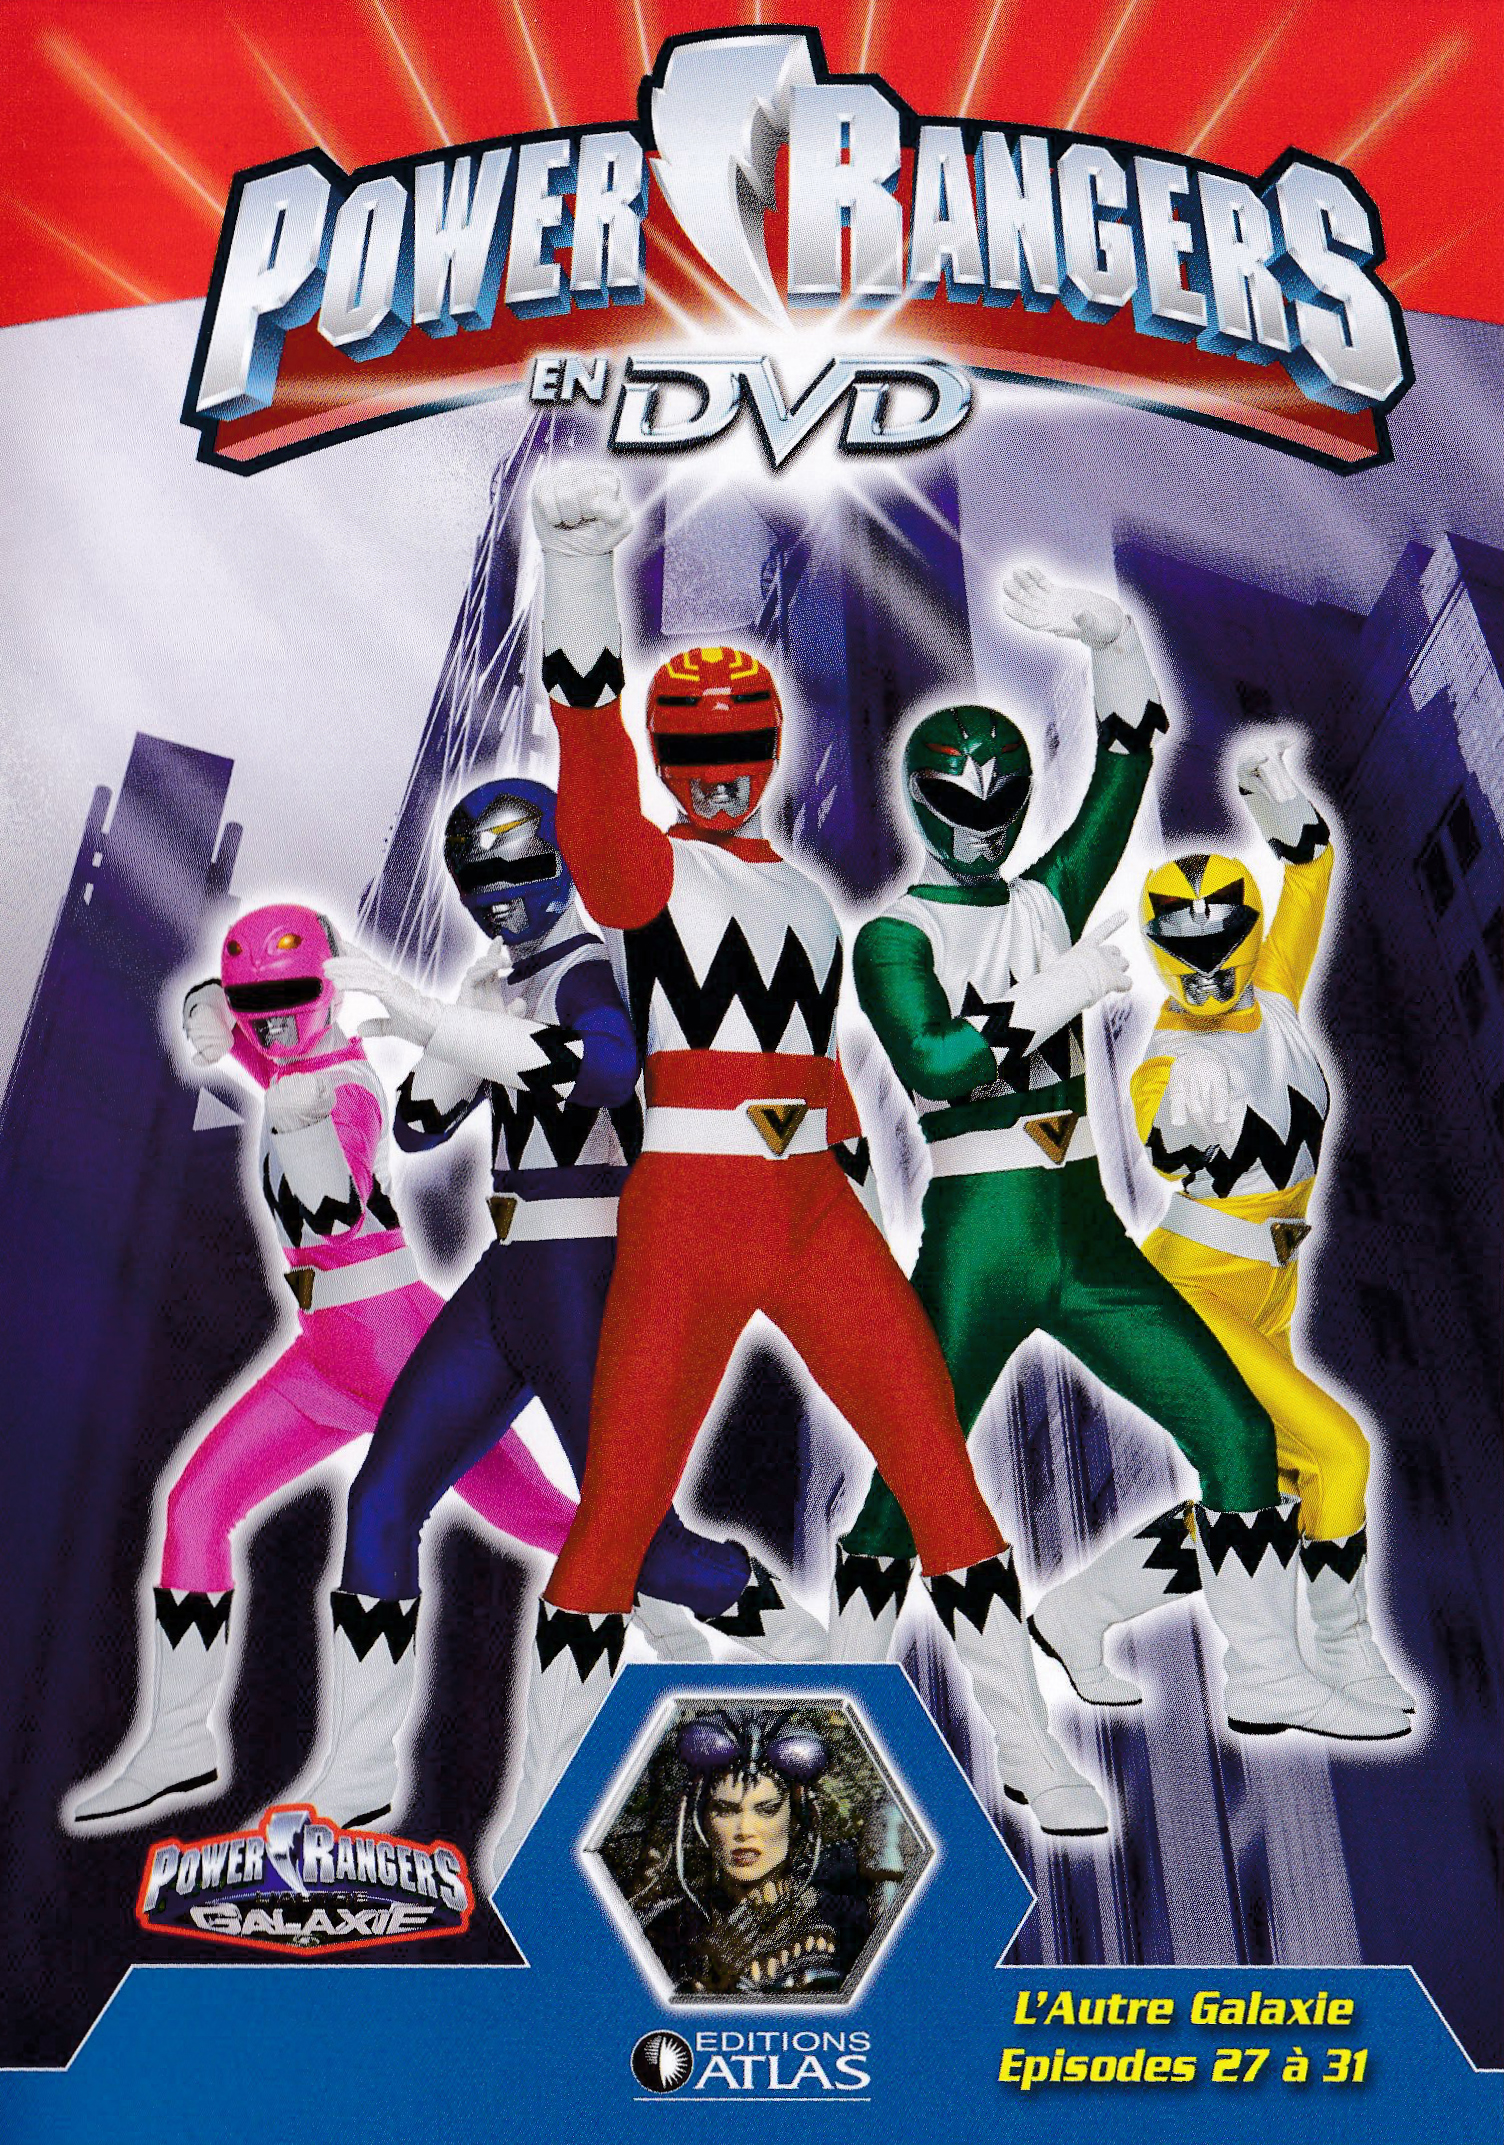 Power Rangers en DVD n°64